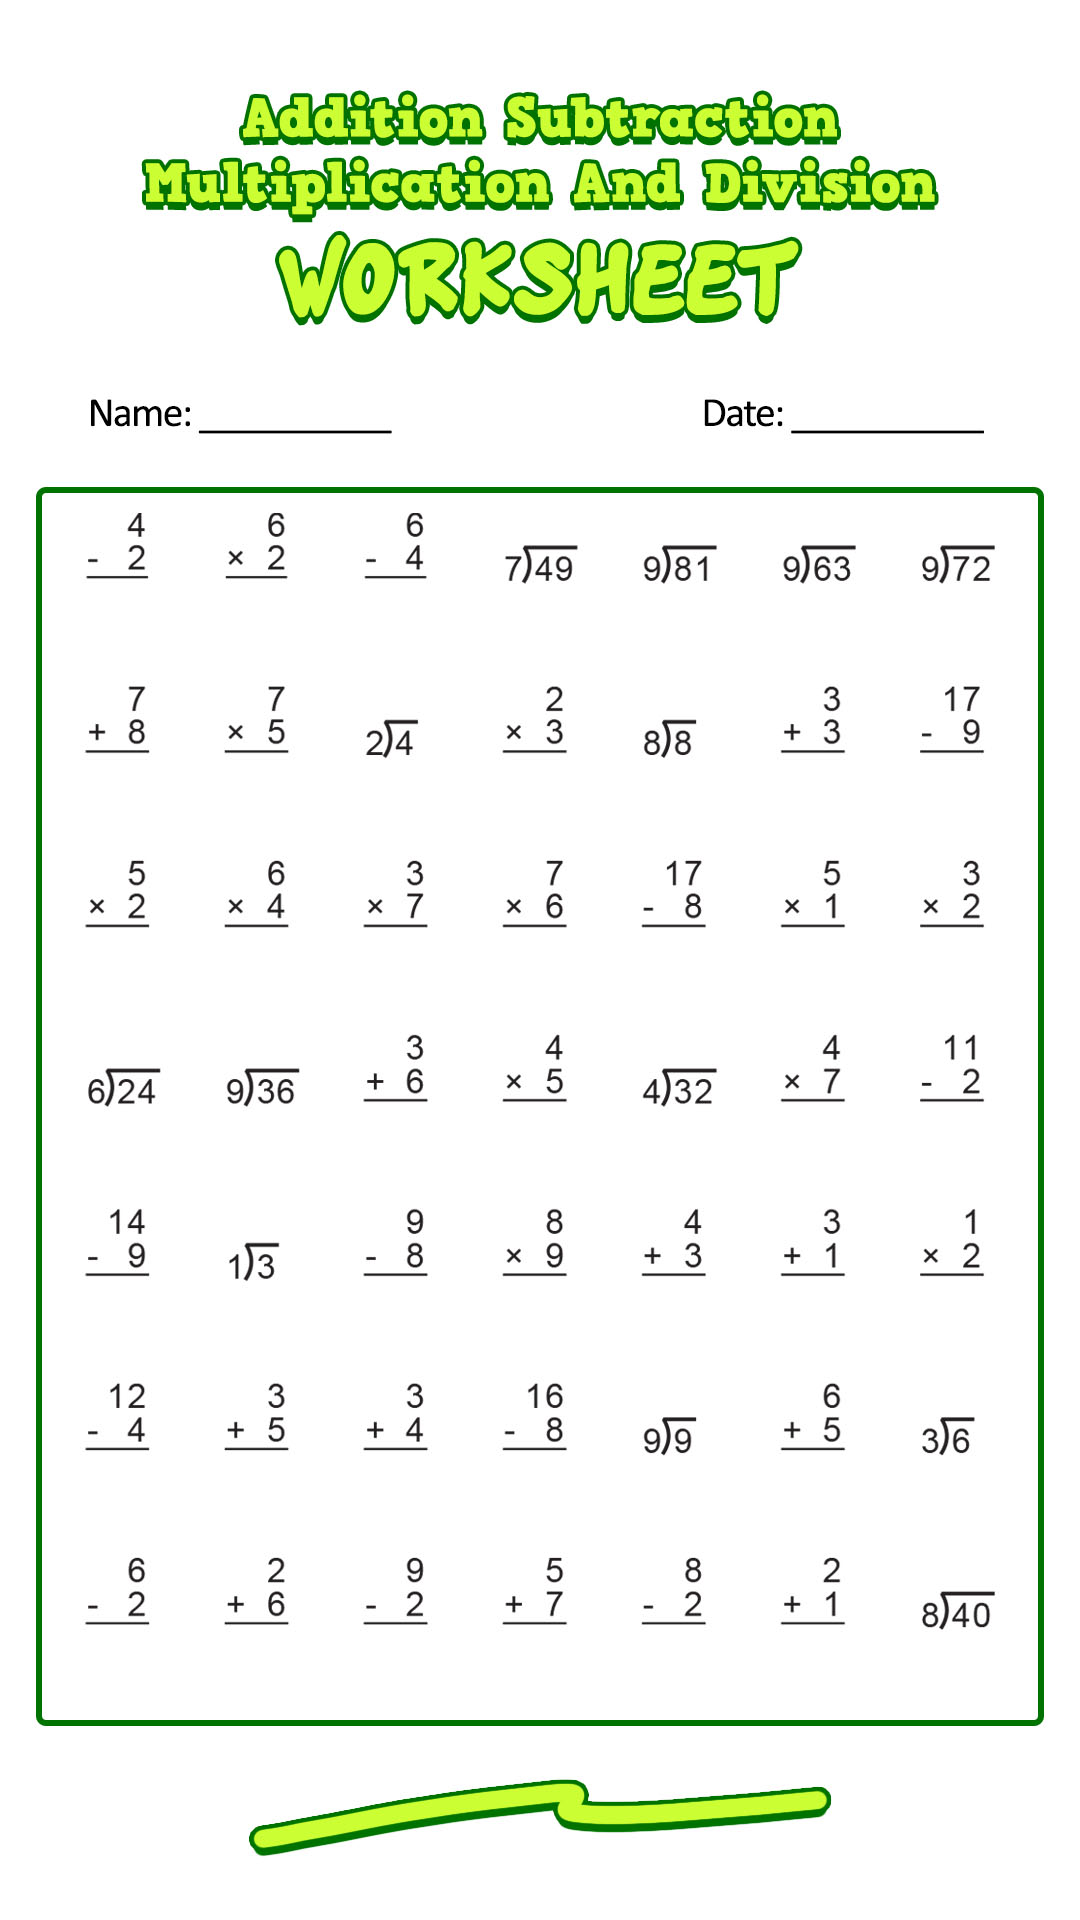 17 Best Images Of Timed Multiplication Worksheets Printable Multiplication Worksheets 100 